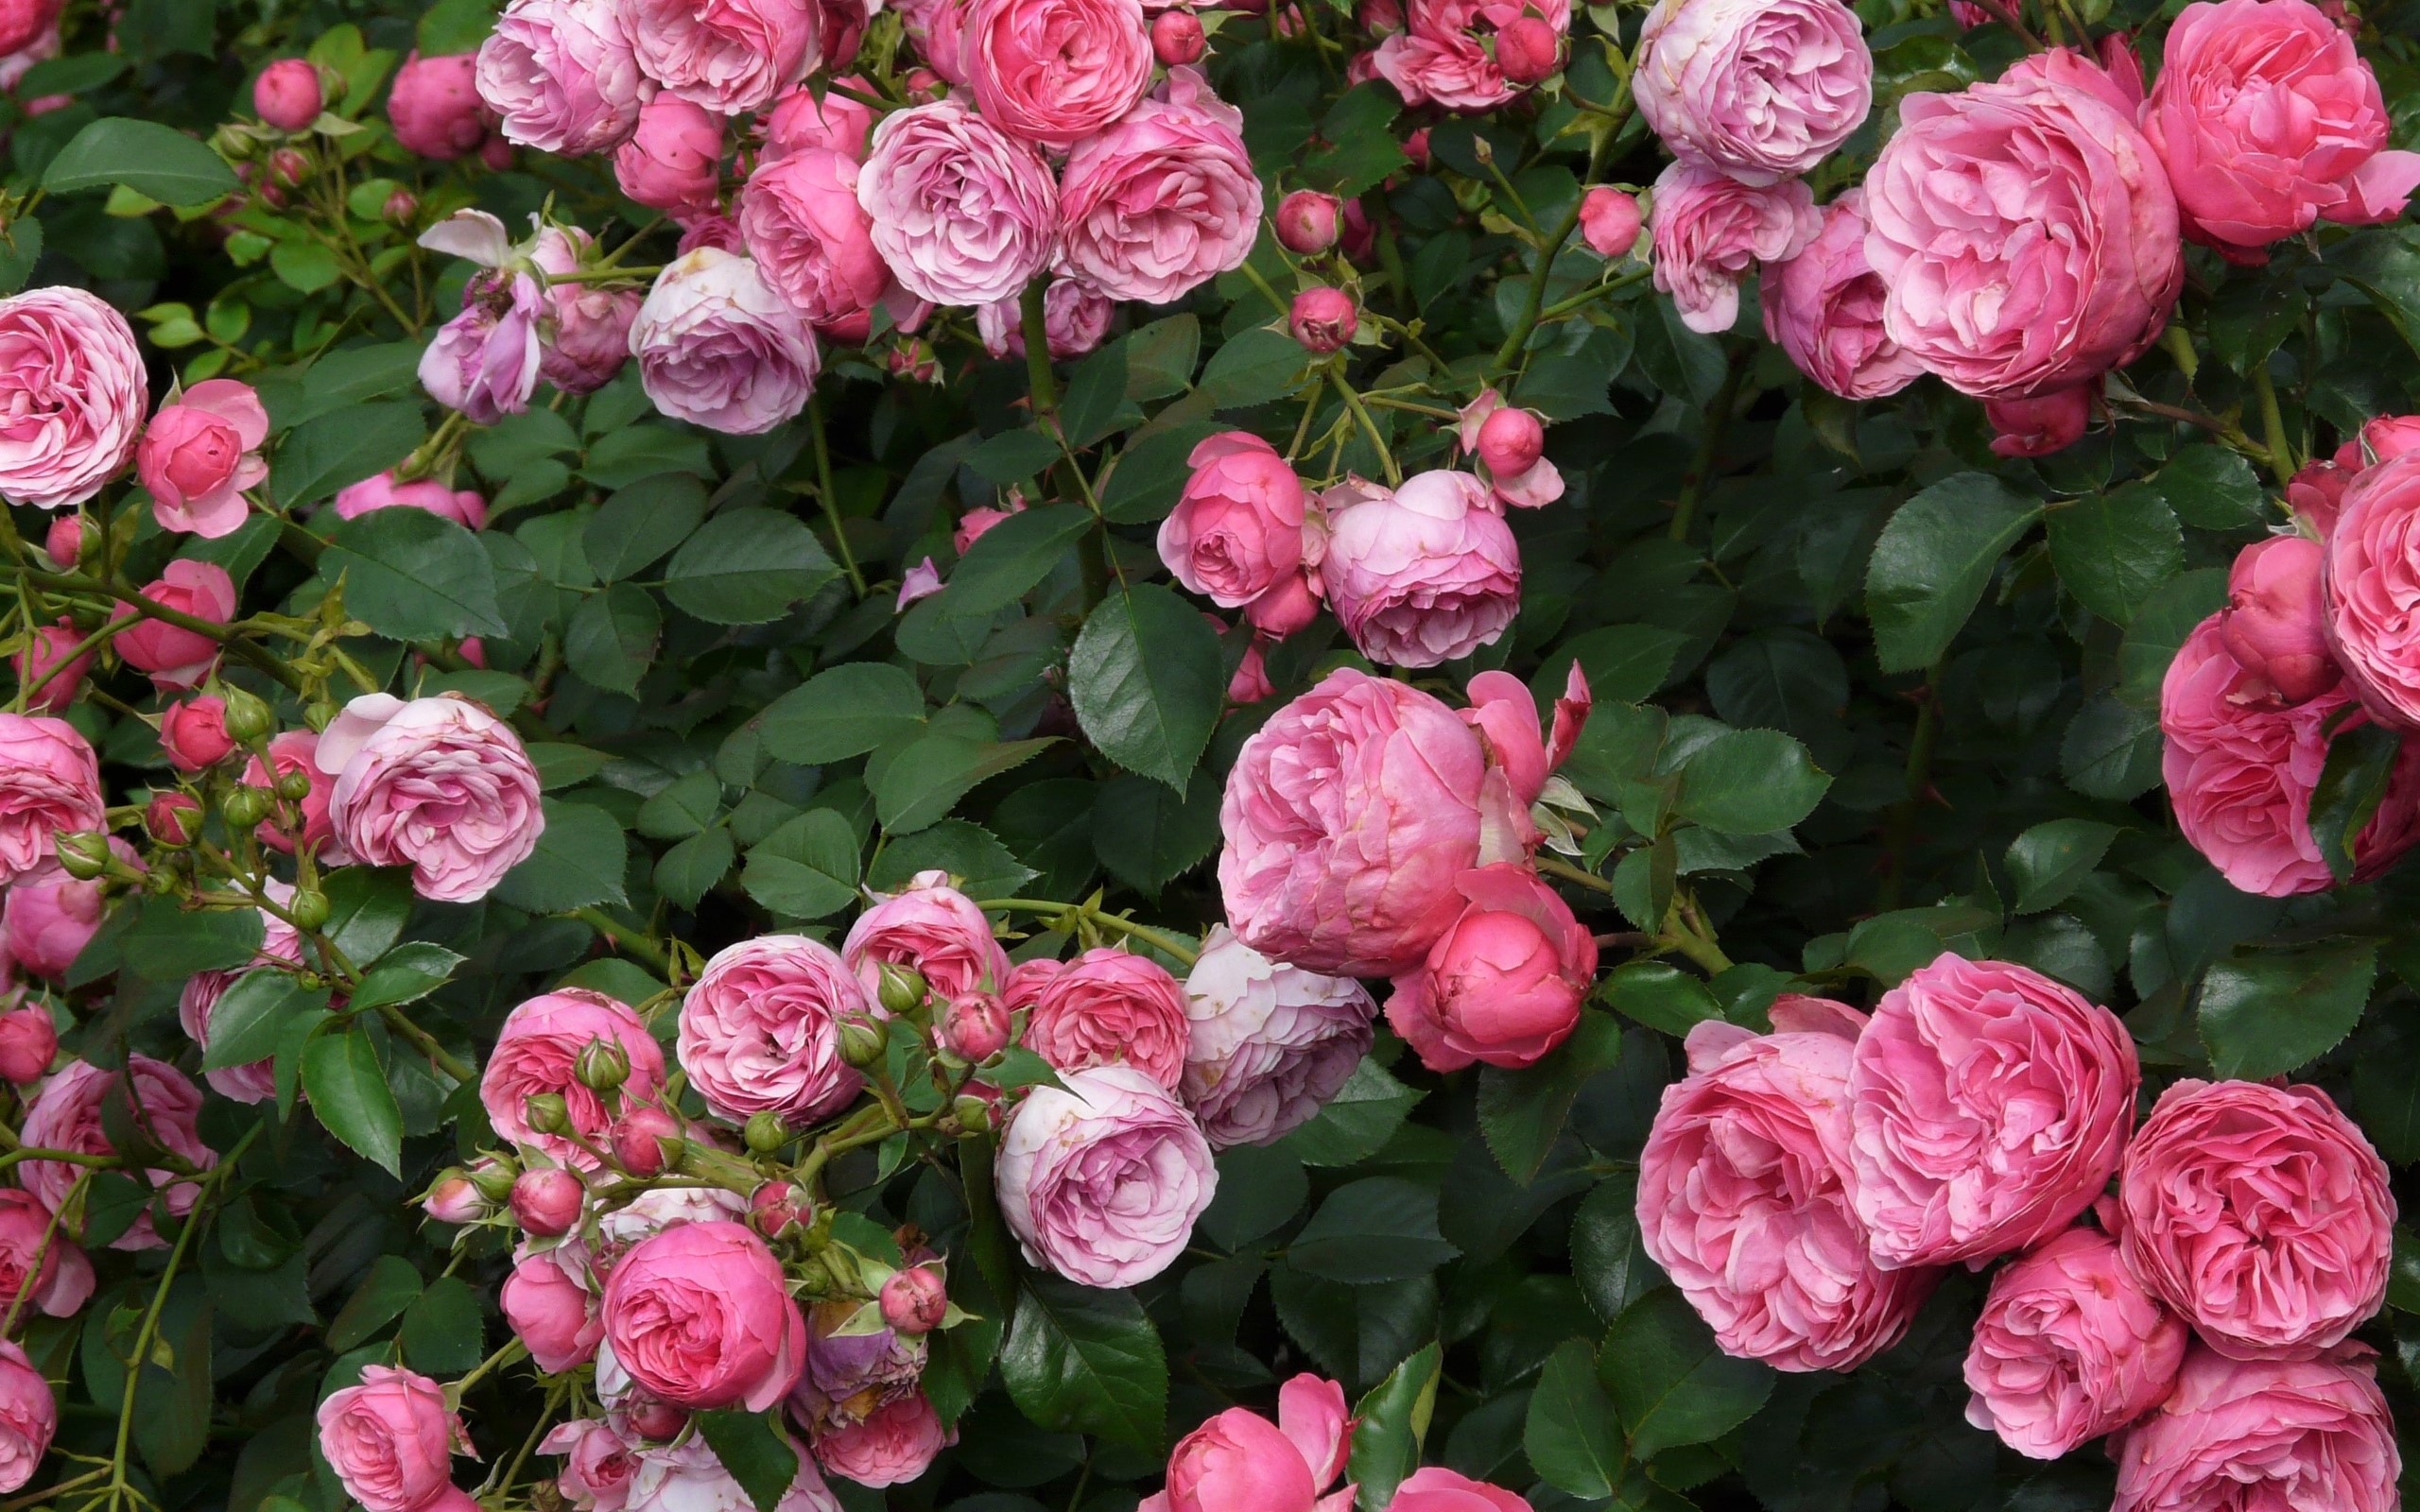 Download mobile wallpaper Flowers, Flower, Rose, Leaf, Earth, Pink Flower, Rose Bush for free.